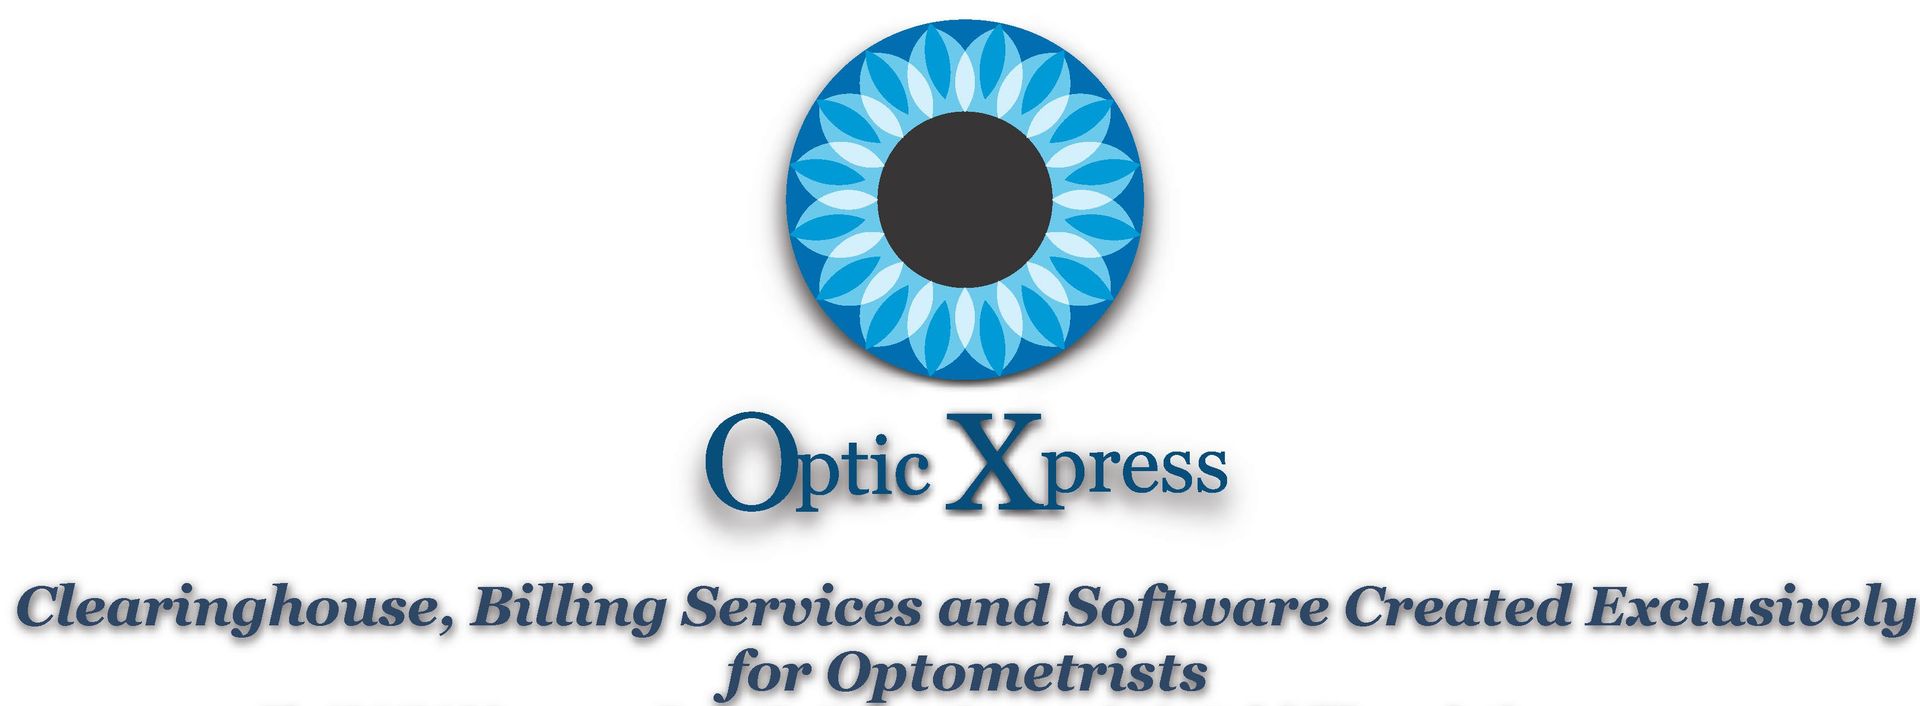 Optic Xpress Billing Services